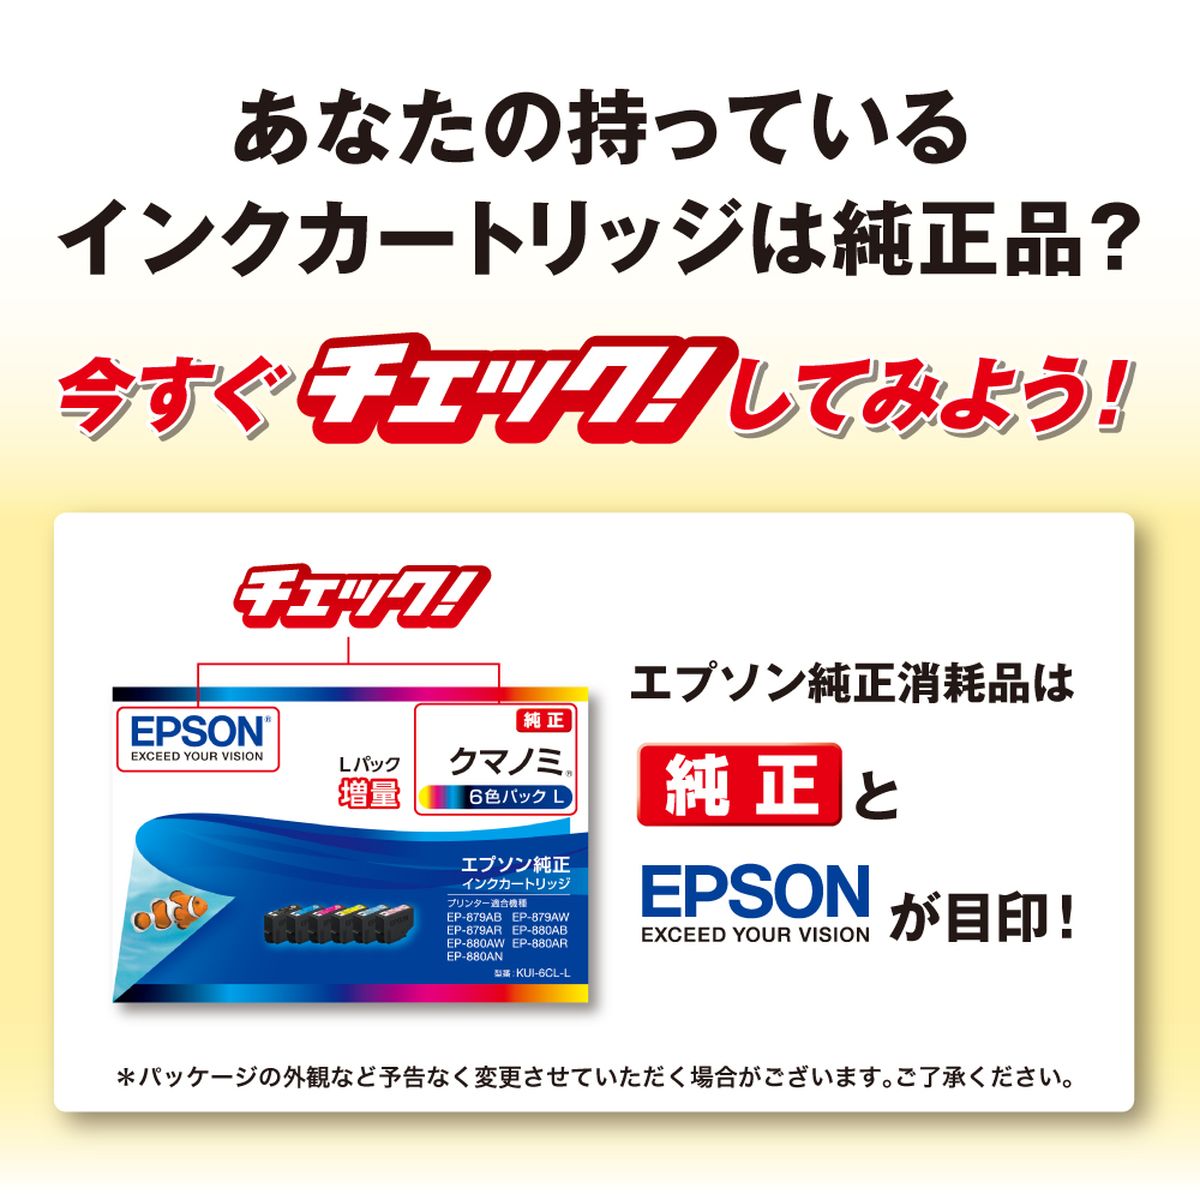 EPSON イチョウ　純正インクカートリッジ ITH-6CL エプソン